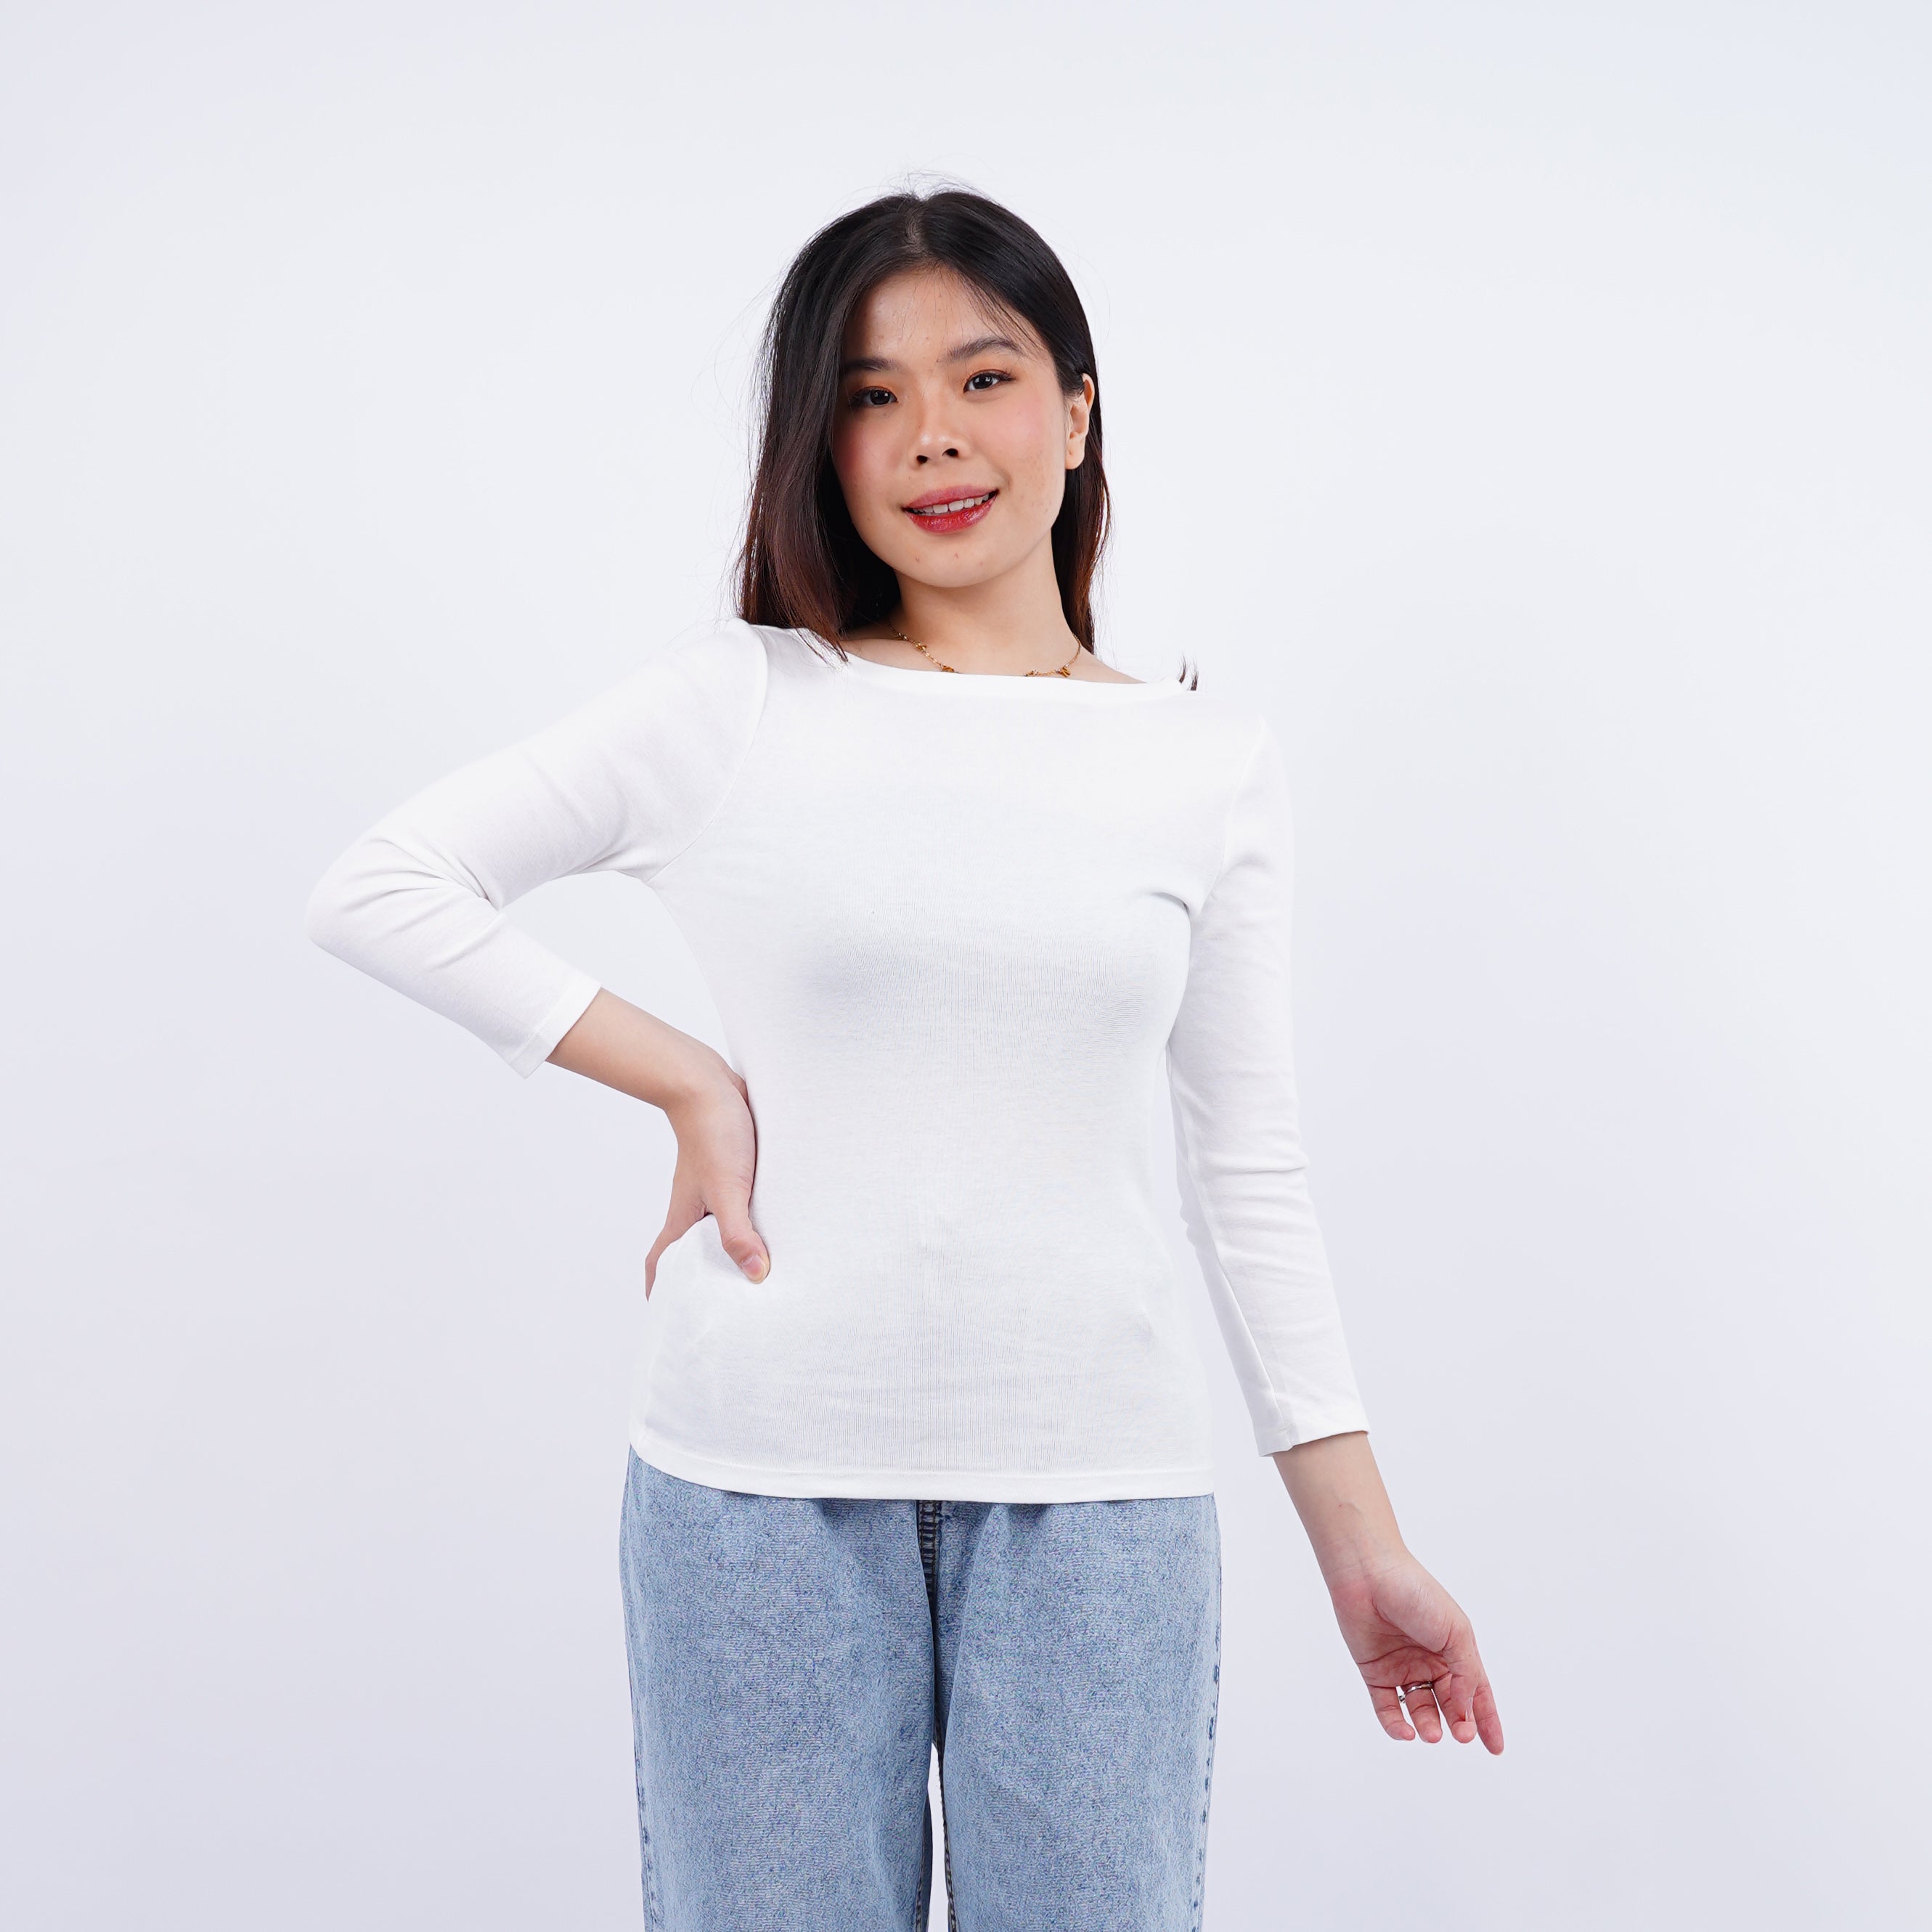 Kaos Wanita Lengan Panjang Model Flatneck Banyak Warna [CG-ONTL 02]